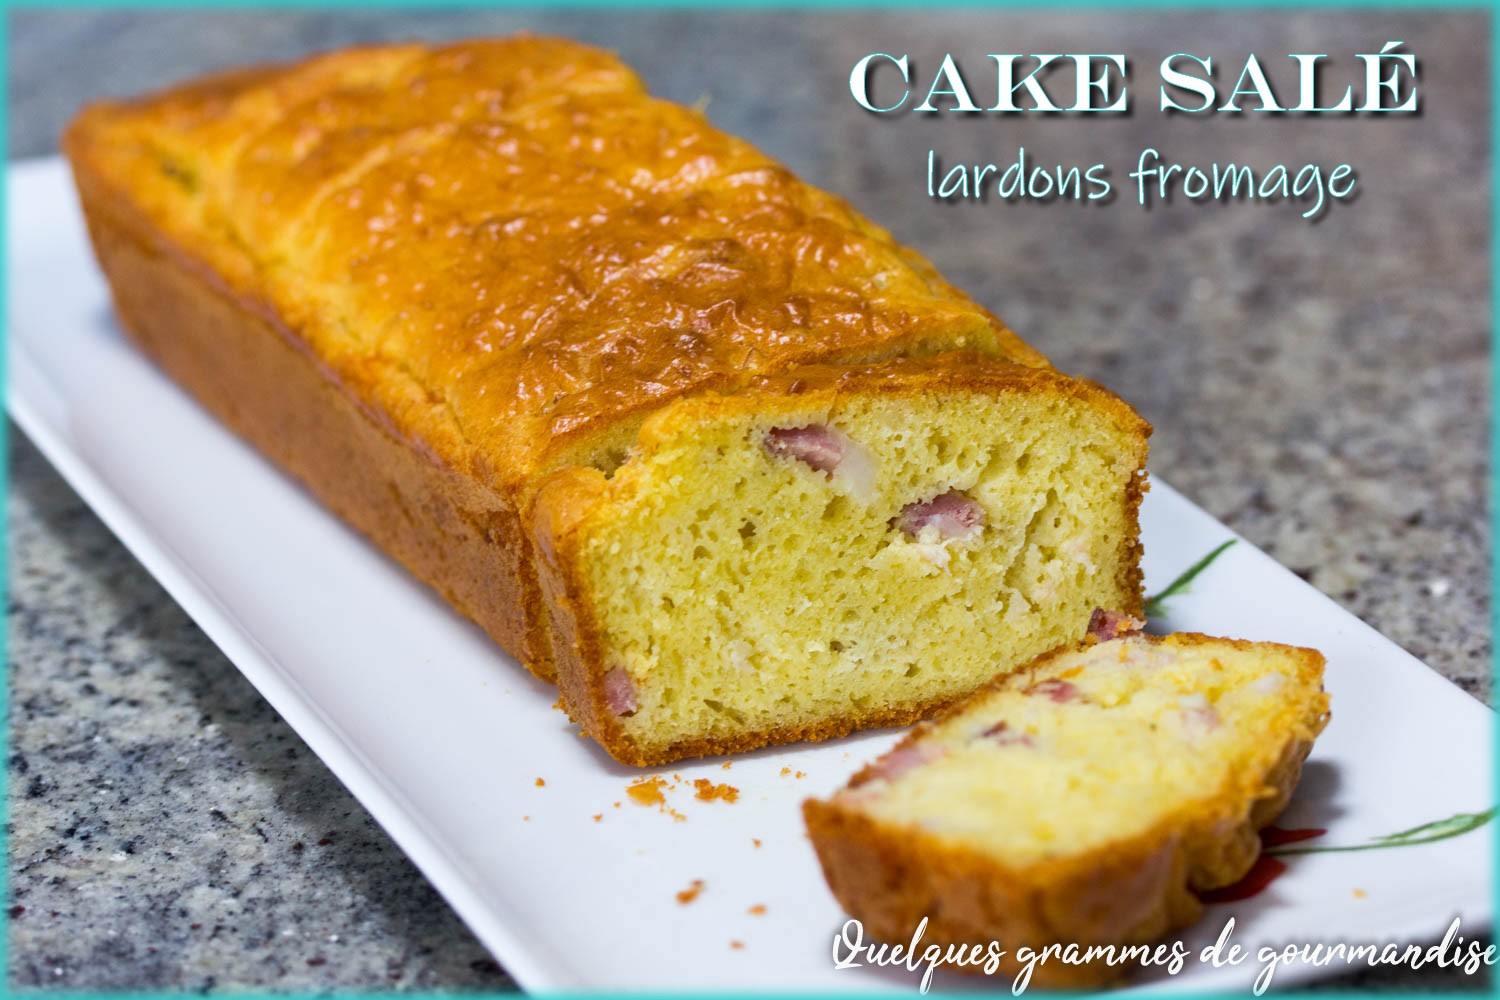 Cake salé lardons fromage